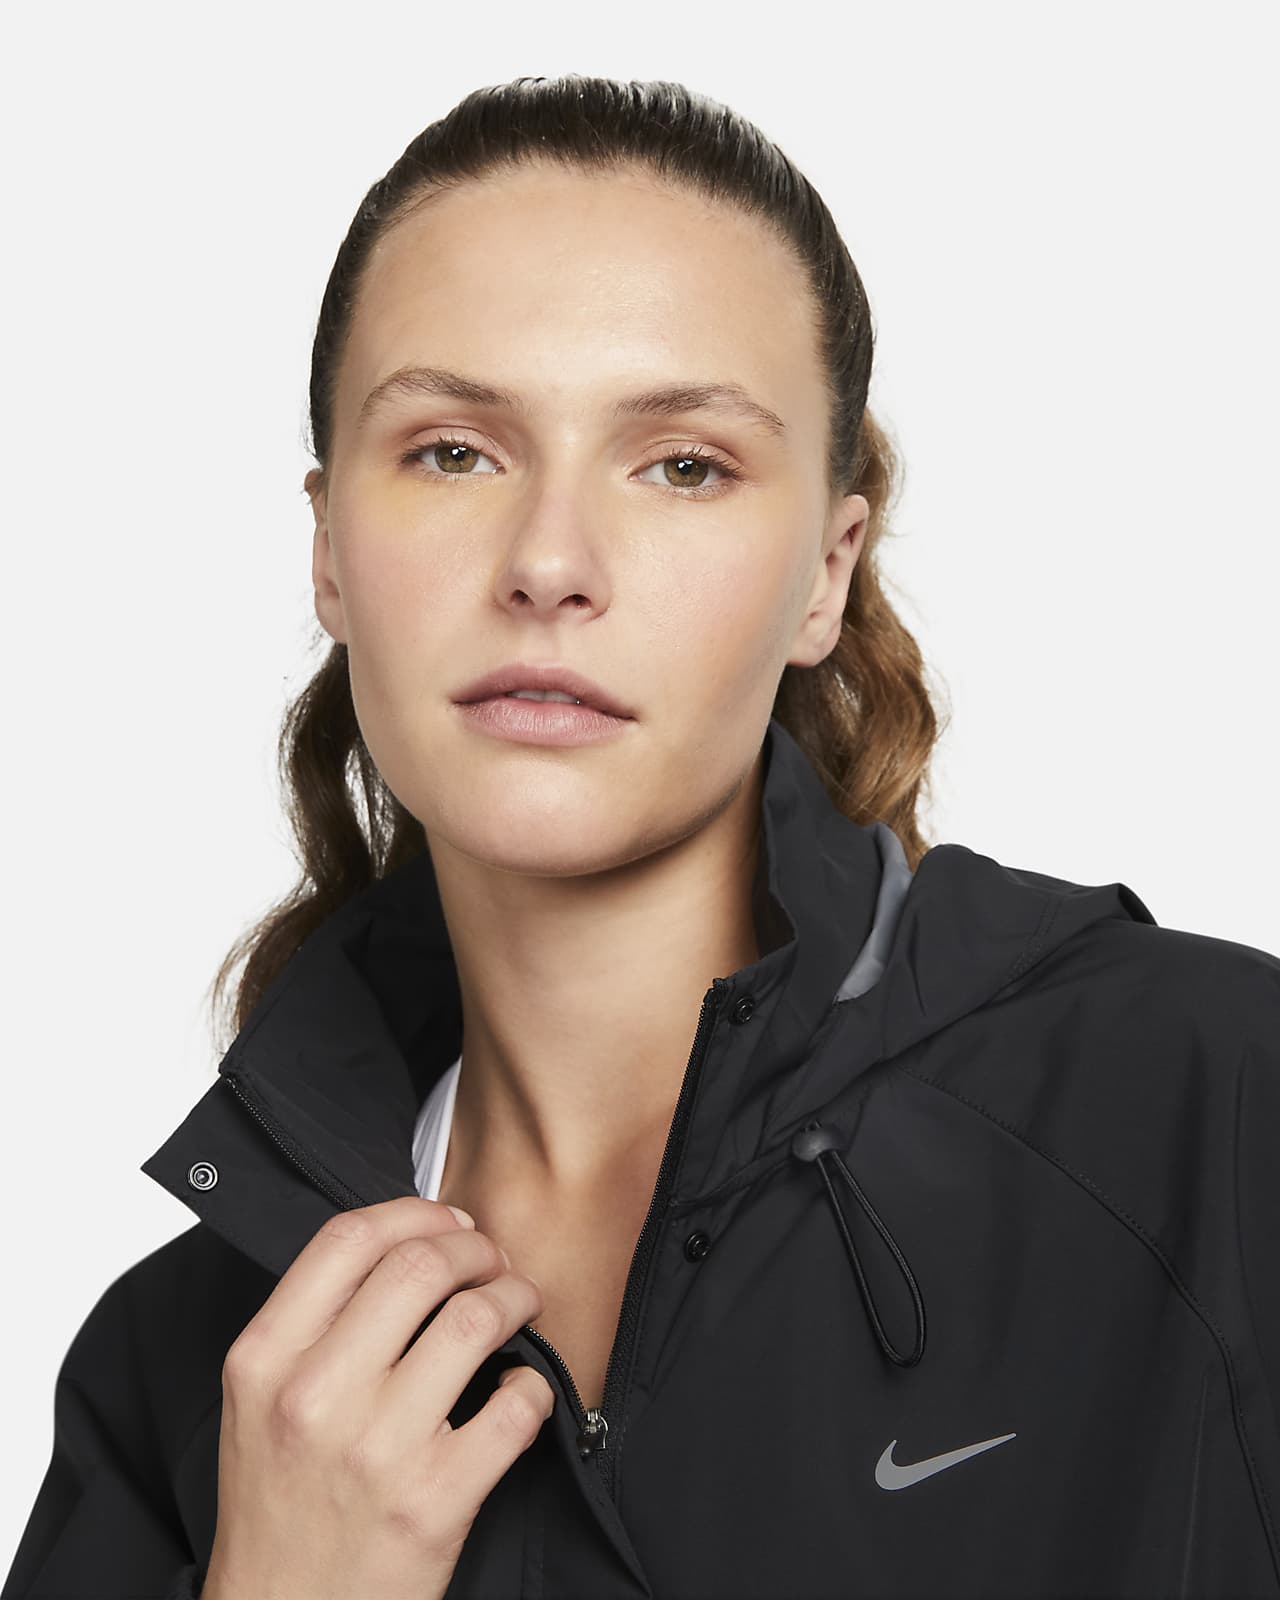 Nike Women's Sportswear Essential Storm-FIT Woven Parka Jacket in Pink -  ShopStyle